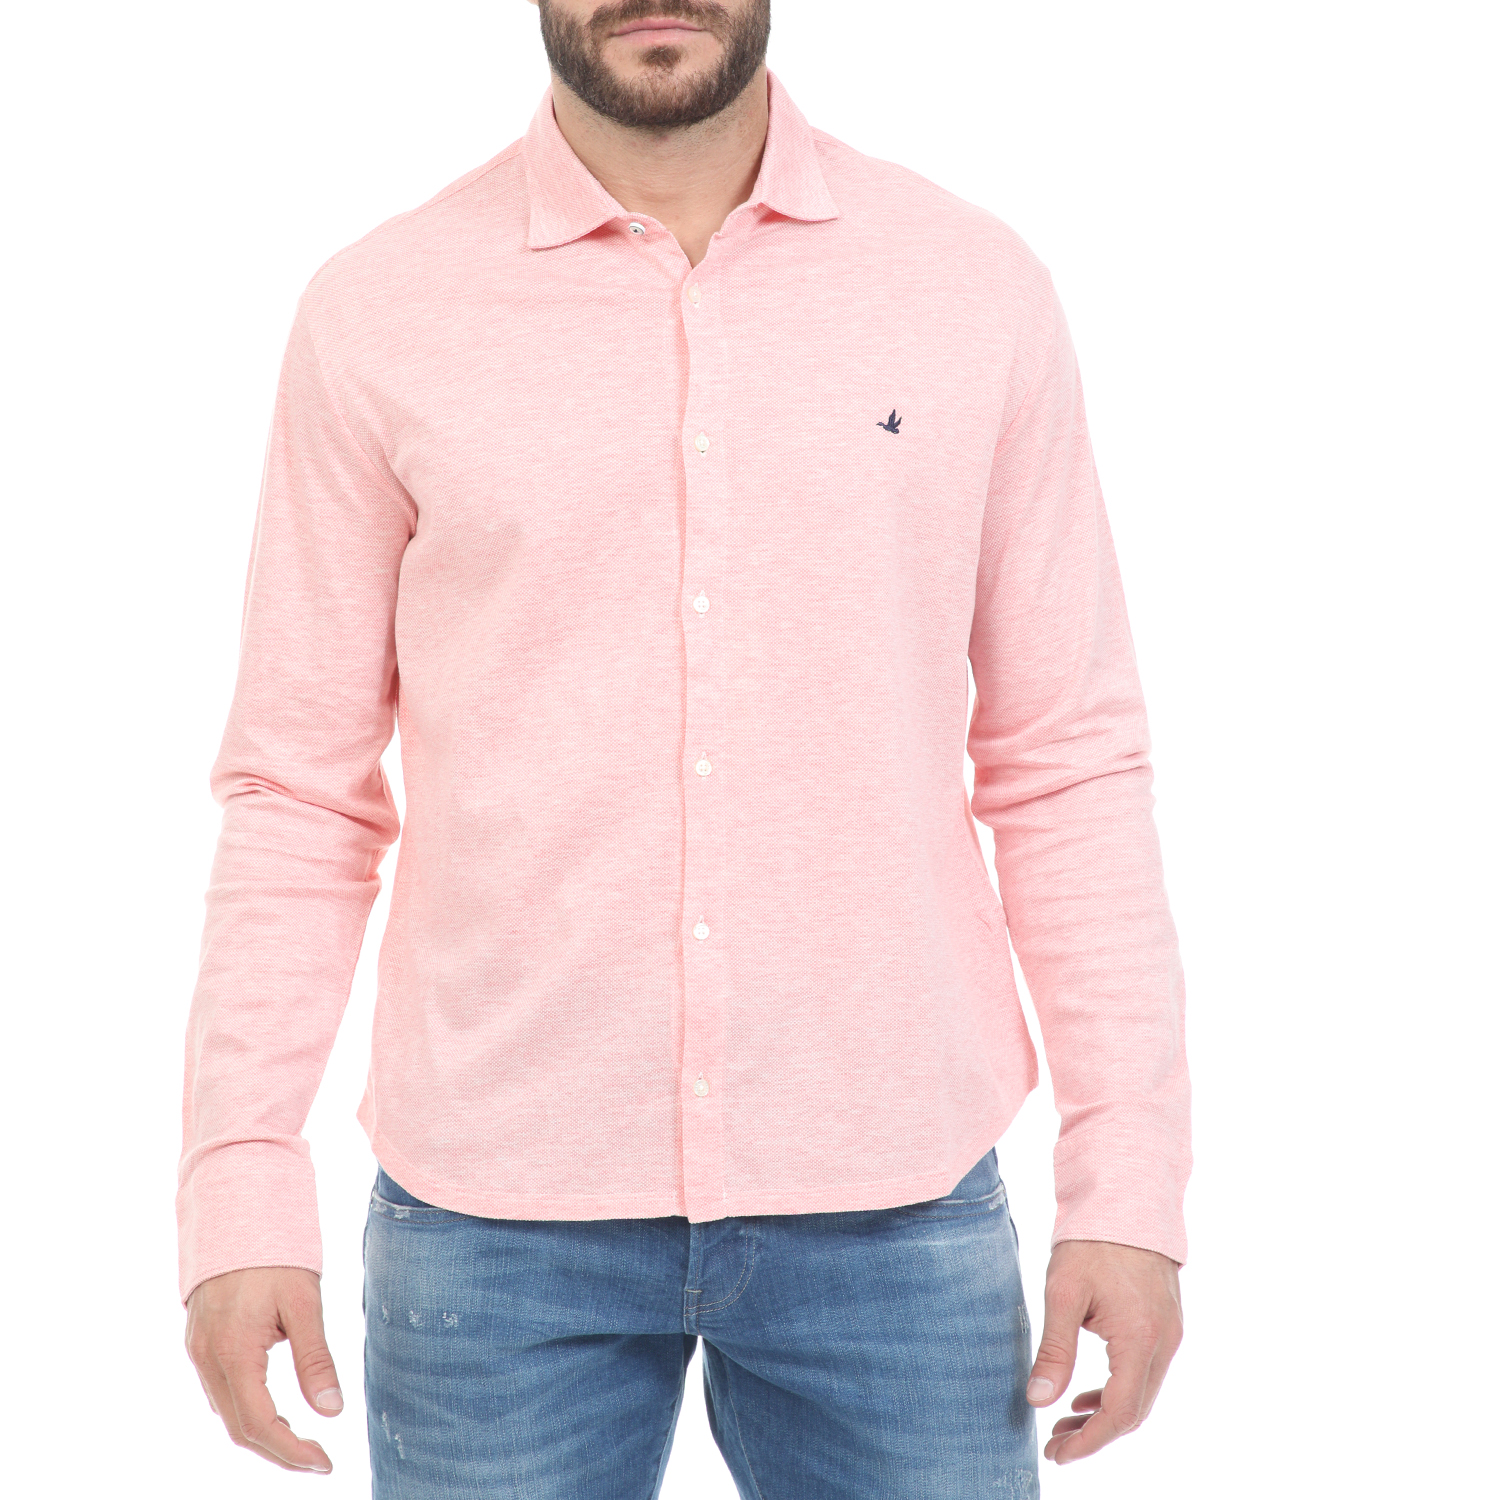 Ανδρικά/Ρούχα/Πουκάμισα/Μακρυμάνικα BROOKSFIELD - Ανδρικό πουκάμισο BROOKSFIELD ροζ